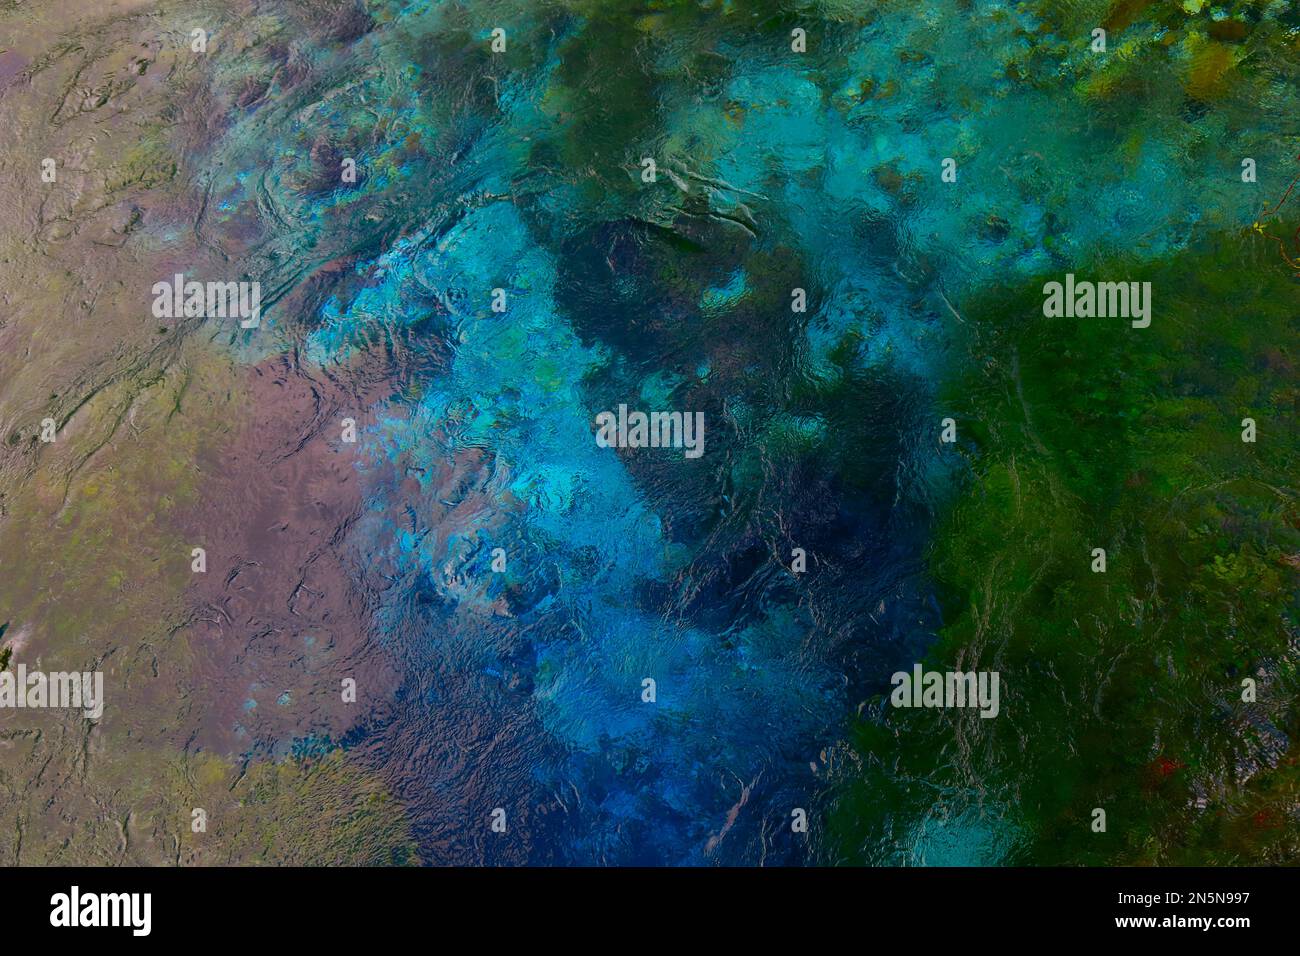 El fondo abstracto está hecho por el agua colorida de la primavera de Blue Eye, Albania. Foto de stock